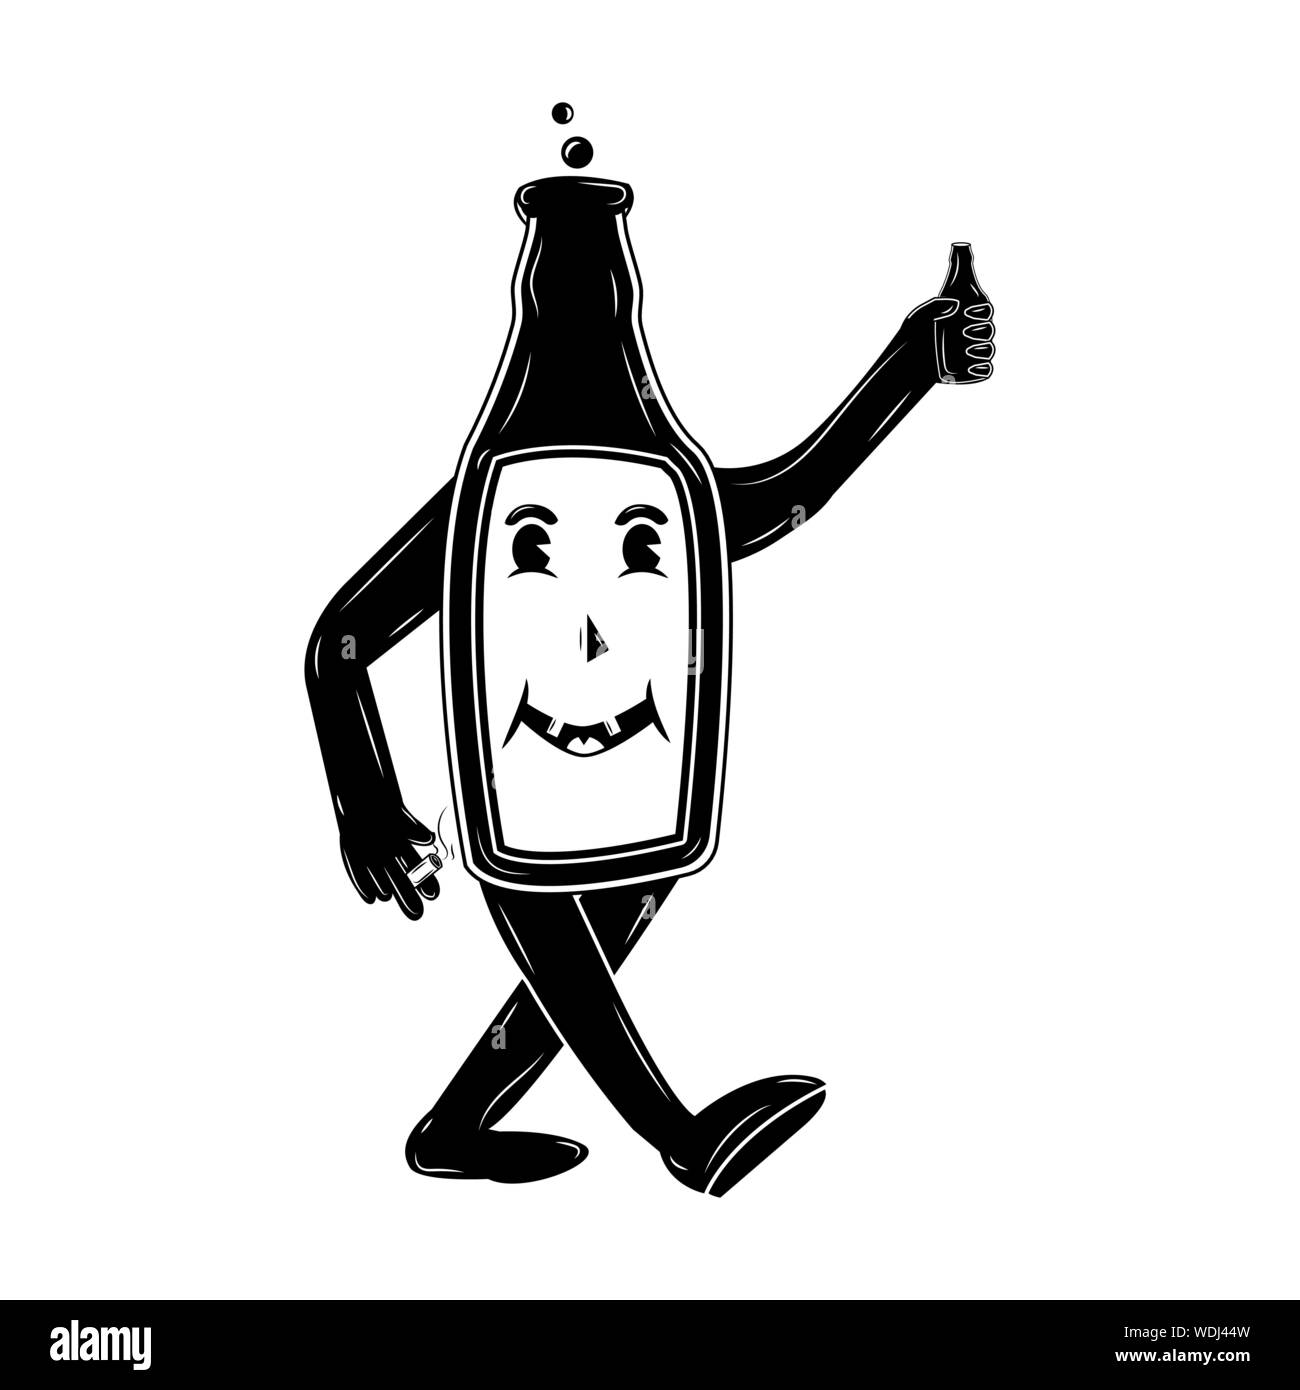 Une bouteille de bière La bière tient dans une main et une cigarette dans l'autre qui fume, heureux ivrogne personnage dans un style rétro, vector illustr Illustration de Vecteur